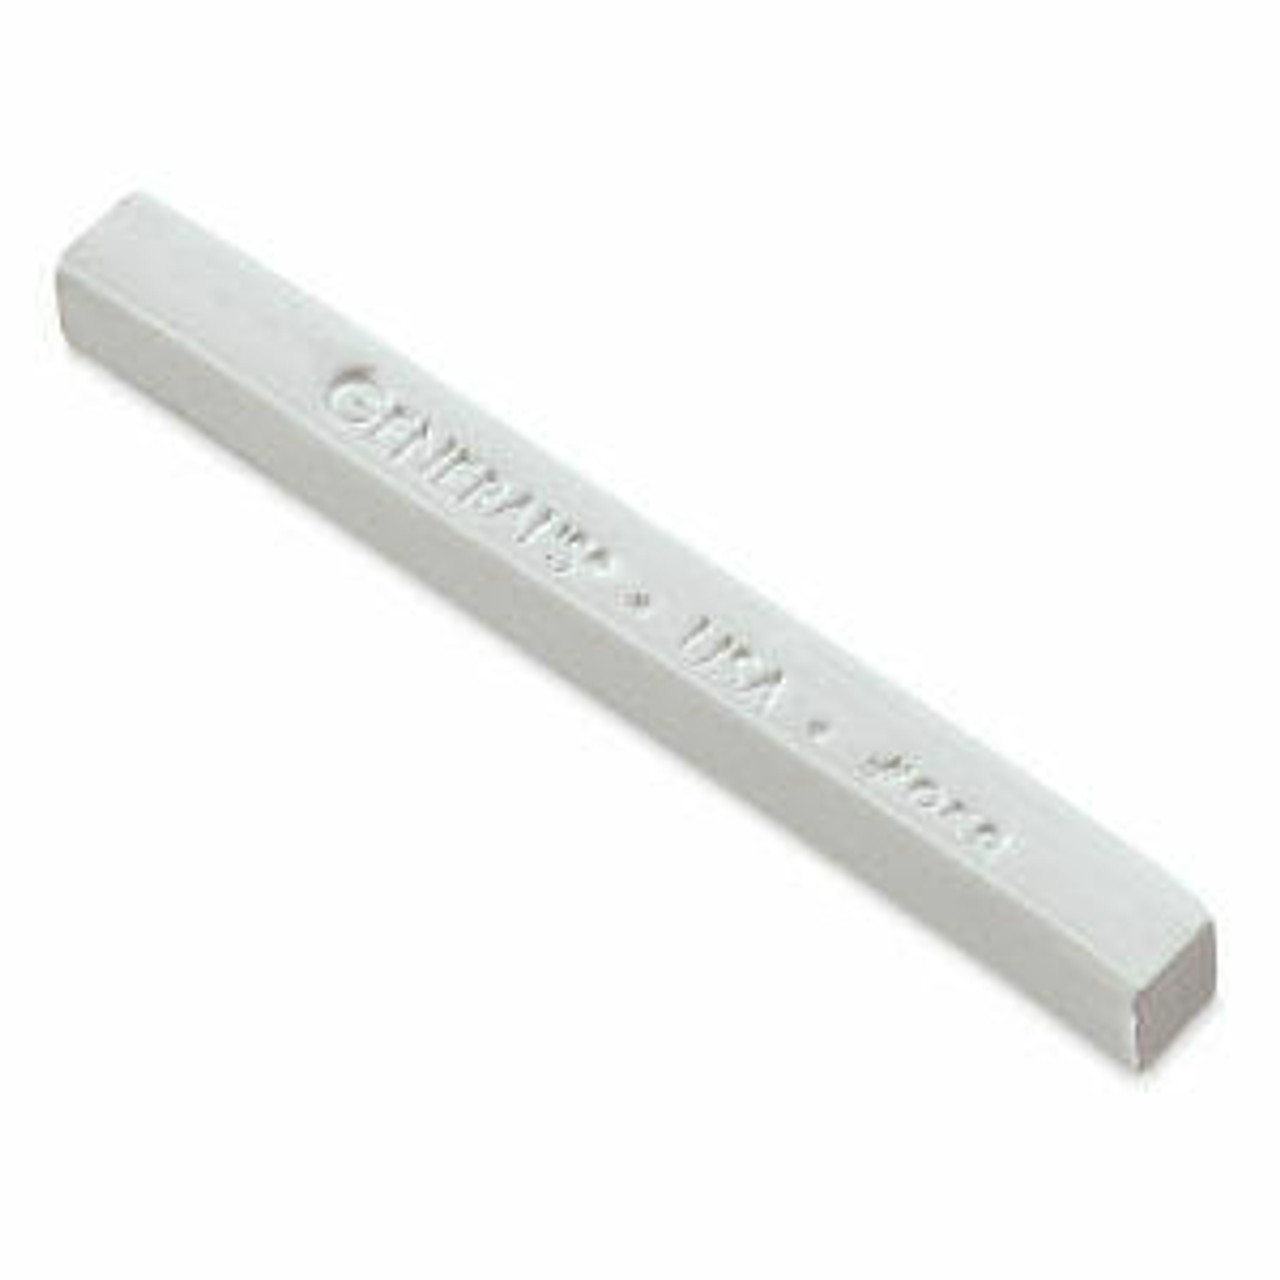 General Pencil - Compressed Charcoal Set - White (4/Pkg.) - Sam